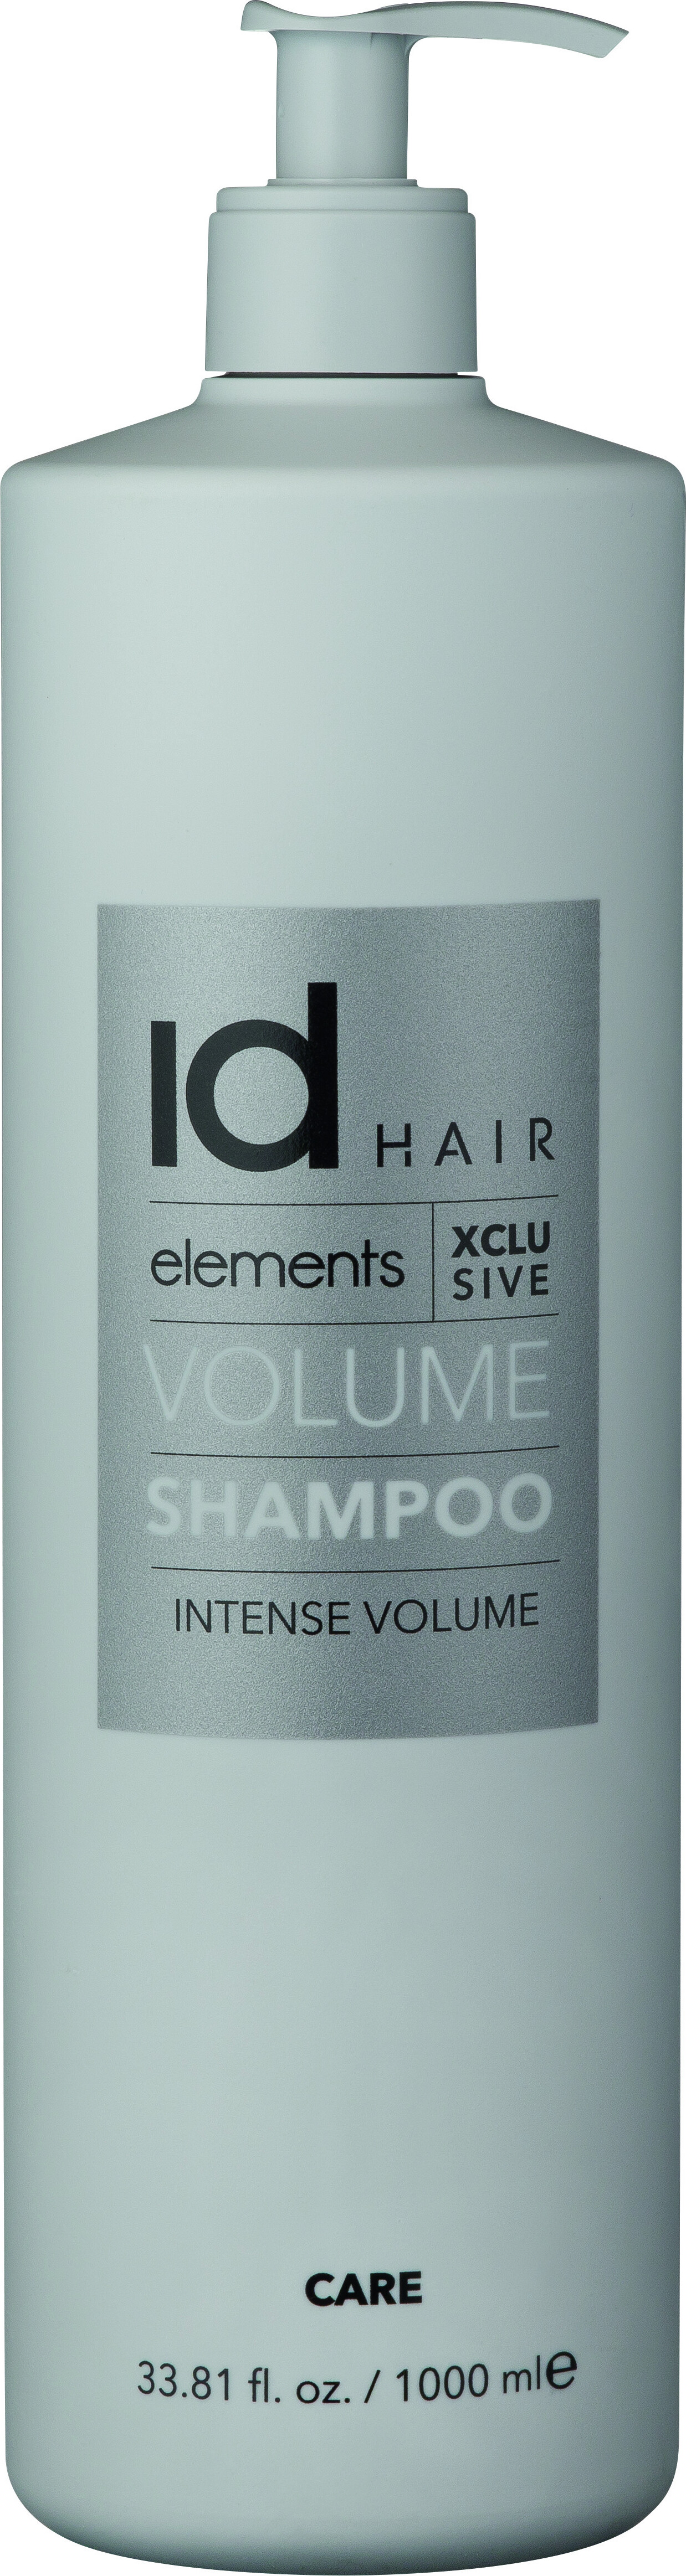 Billede af Id Hair - Elements Xclusive Volume Shampoo - 1000 Ml hos Gucca.dk